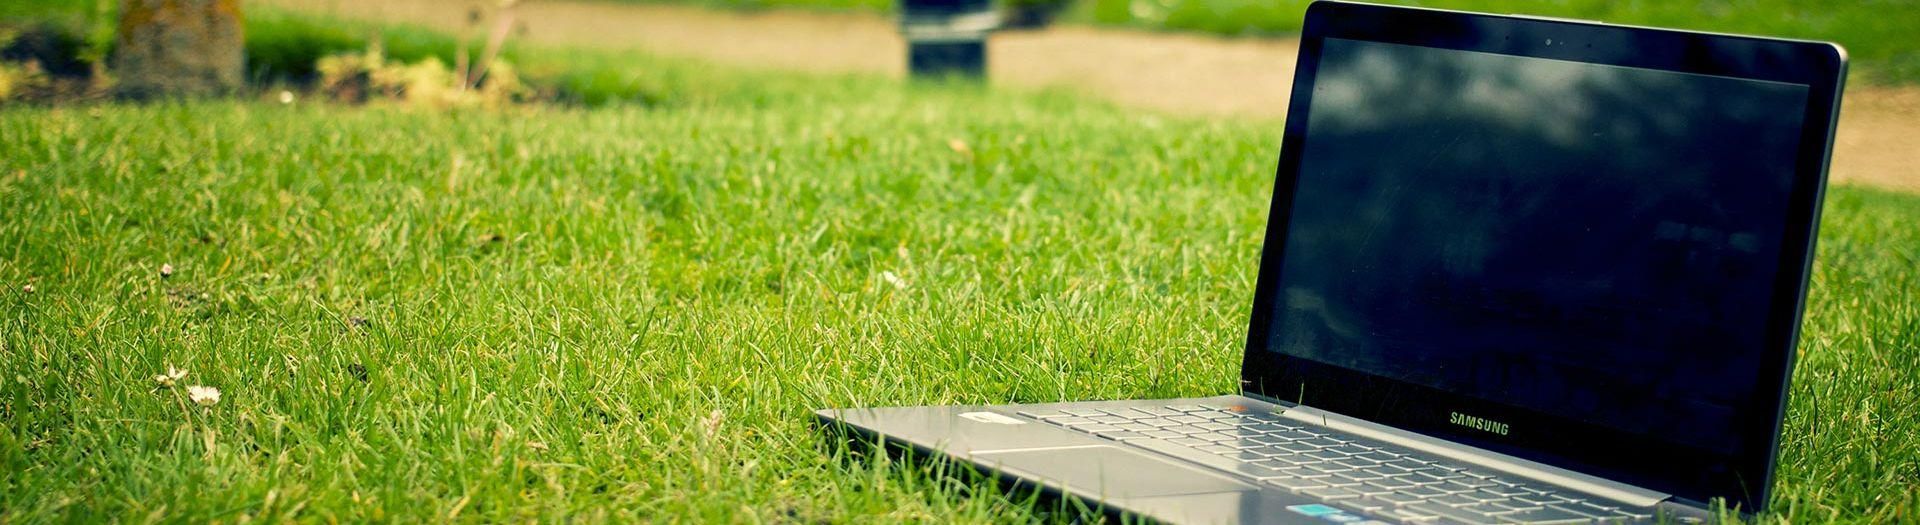 laptop-notebook-grass-meadow-9b558d75 Transport | BRIGHT Software B.V.